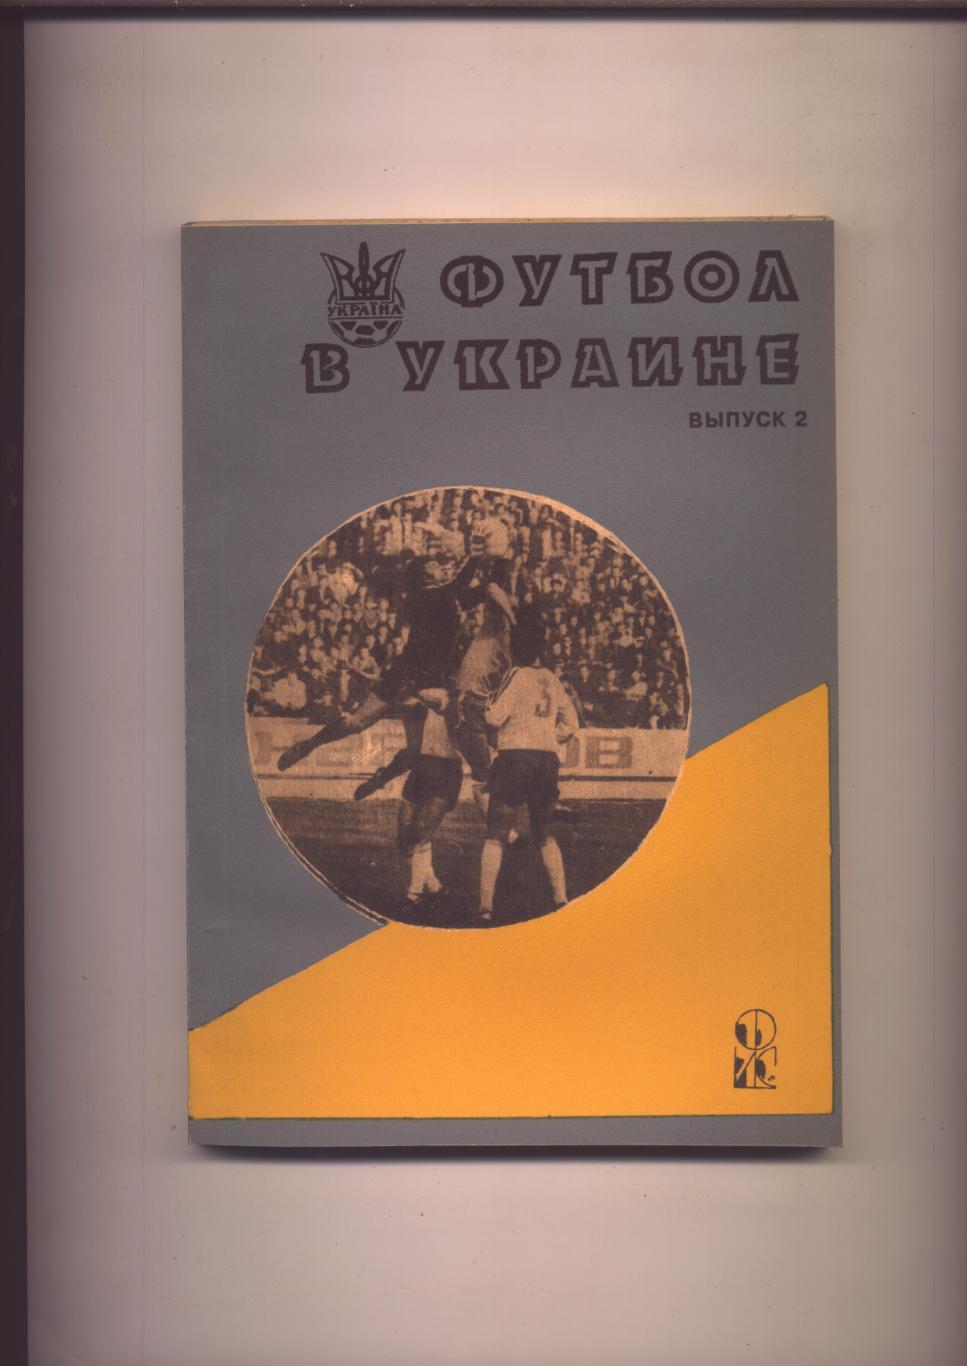 Статистический ежегодник Ю Ландер Футбол в Украине 1992 - 1993 выпуск 2